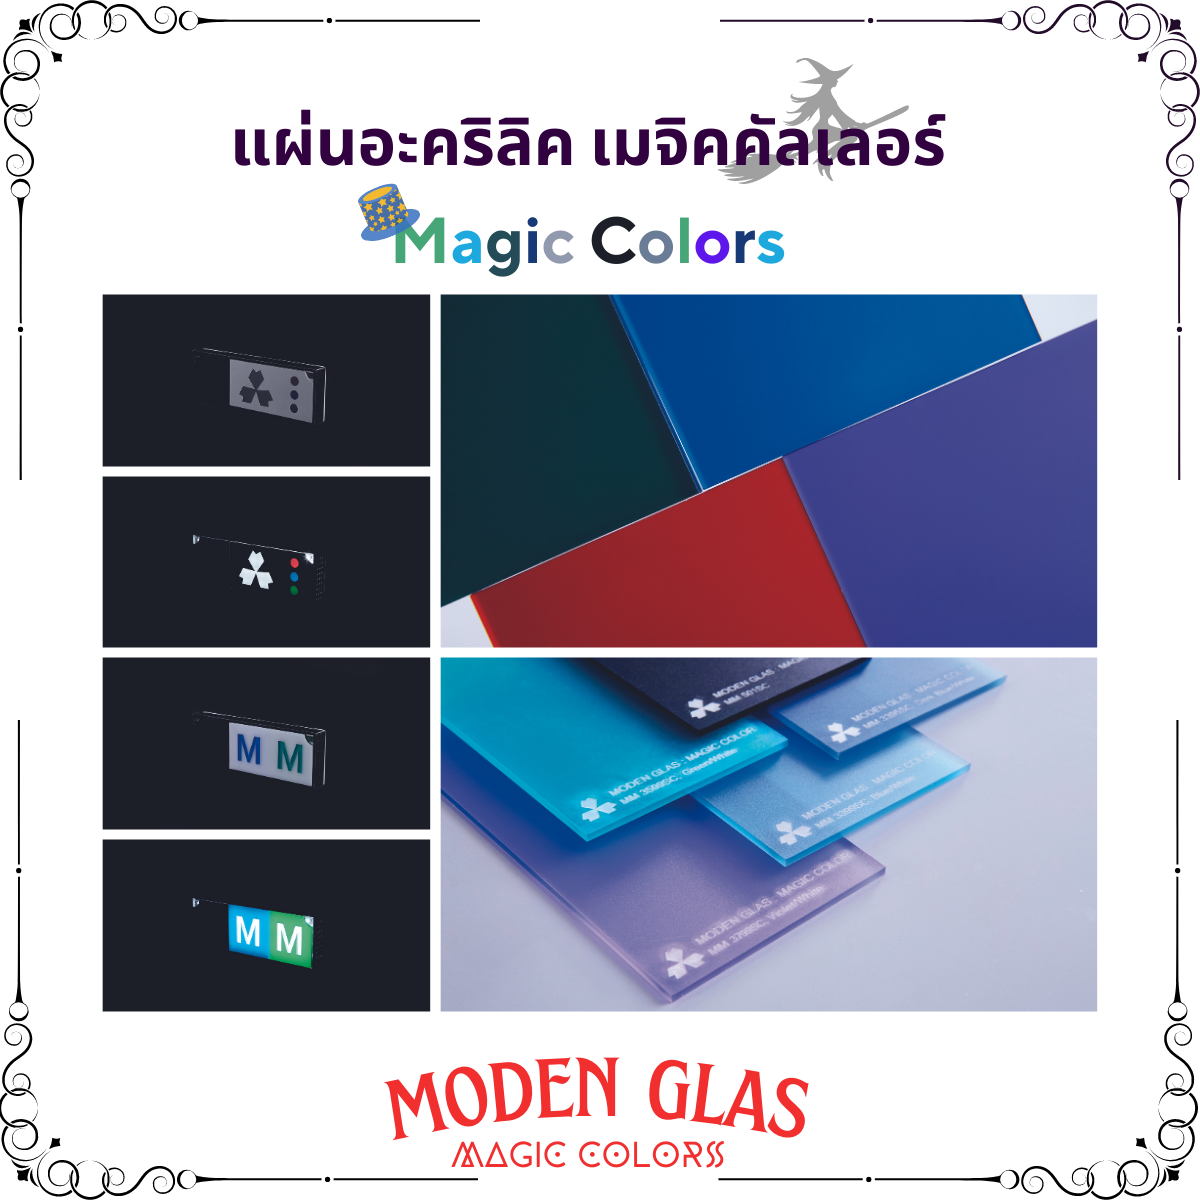 Moden glas magic colors